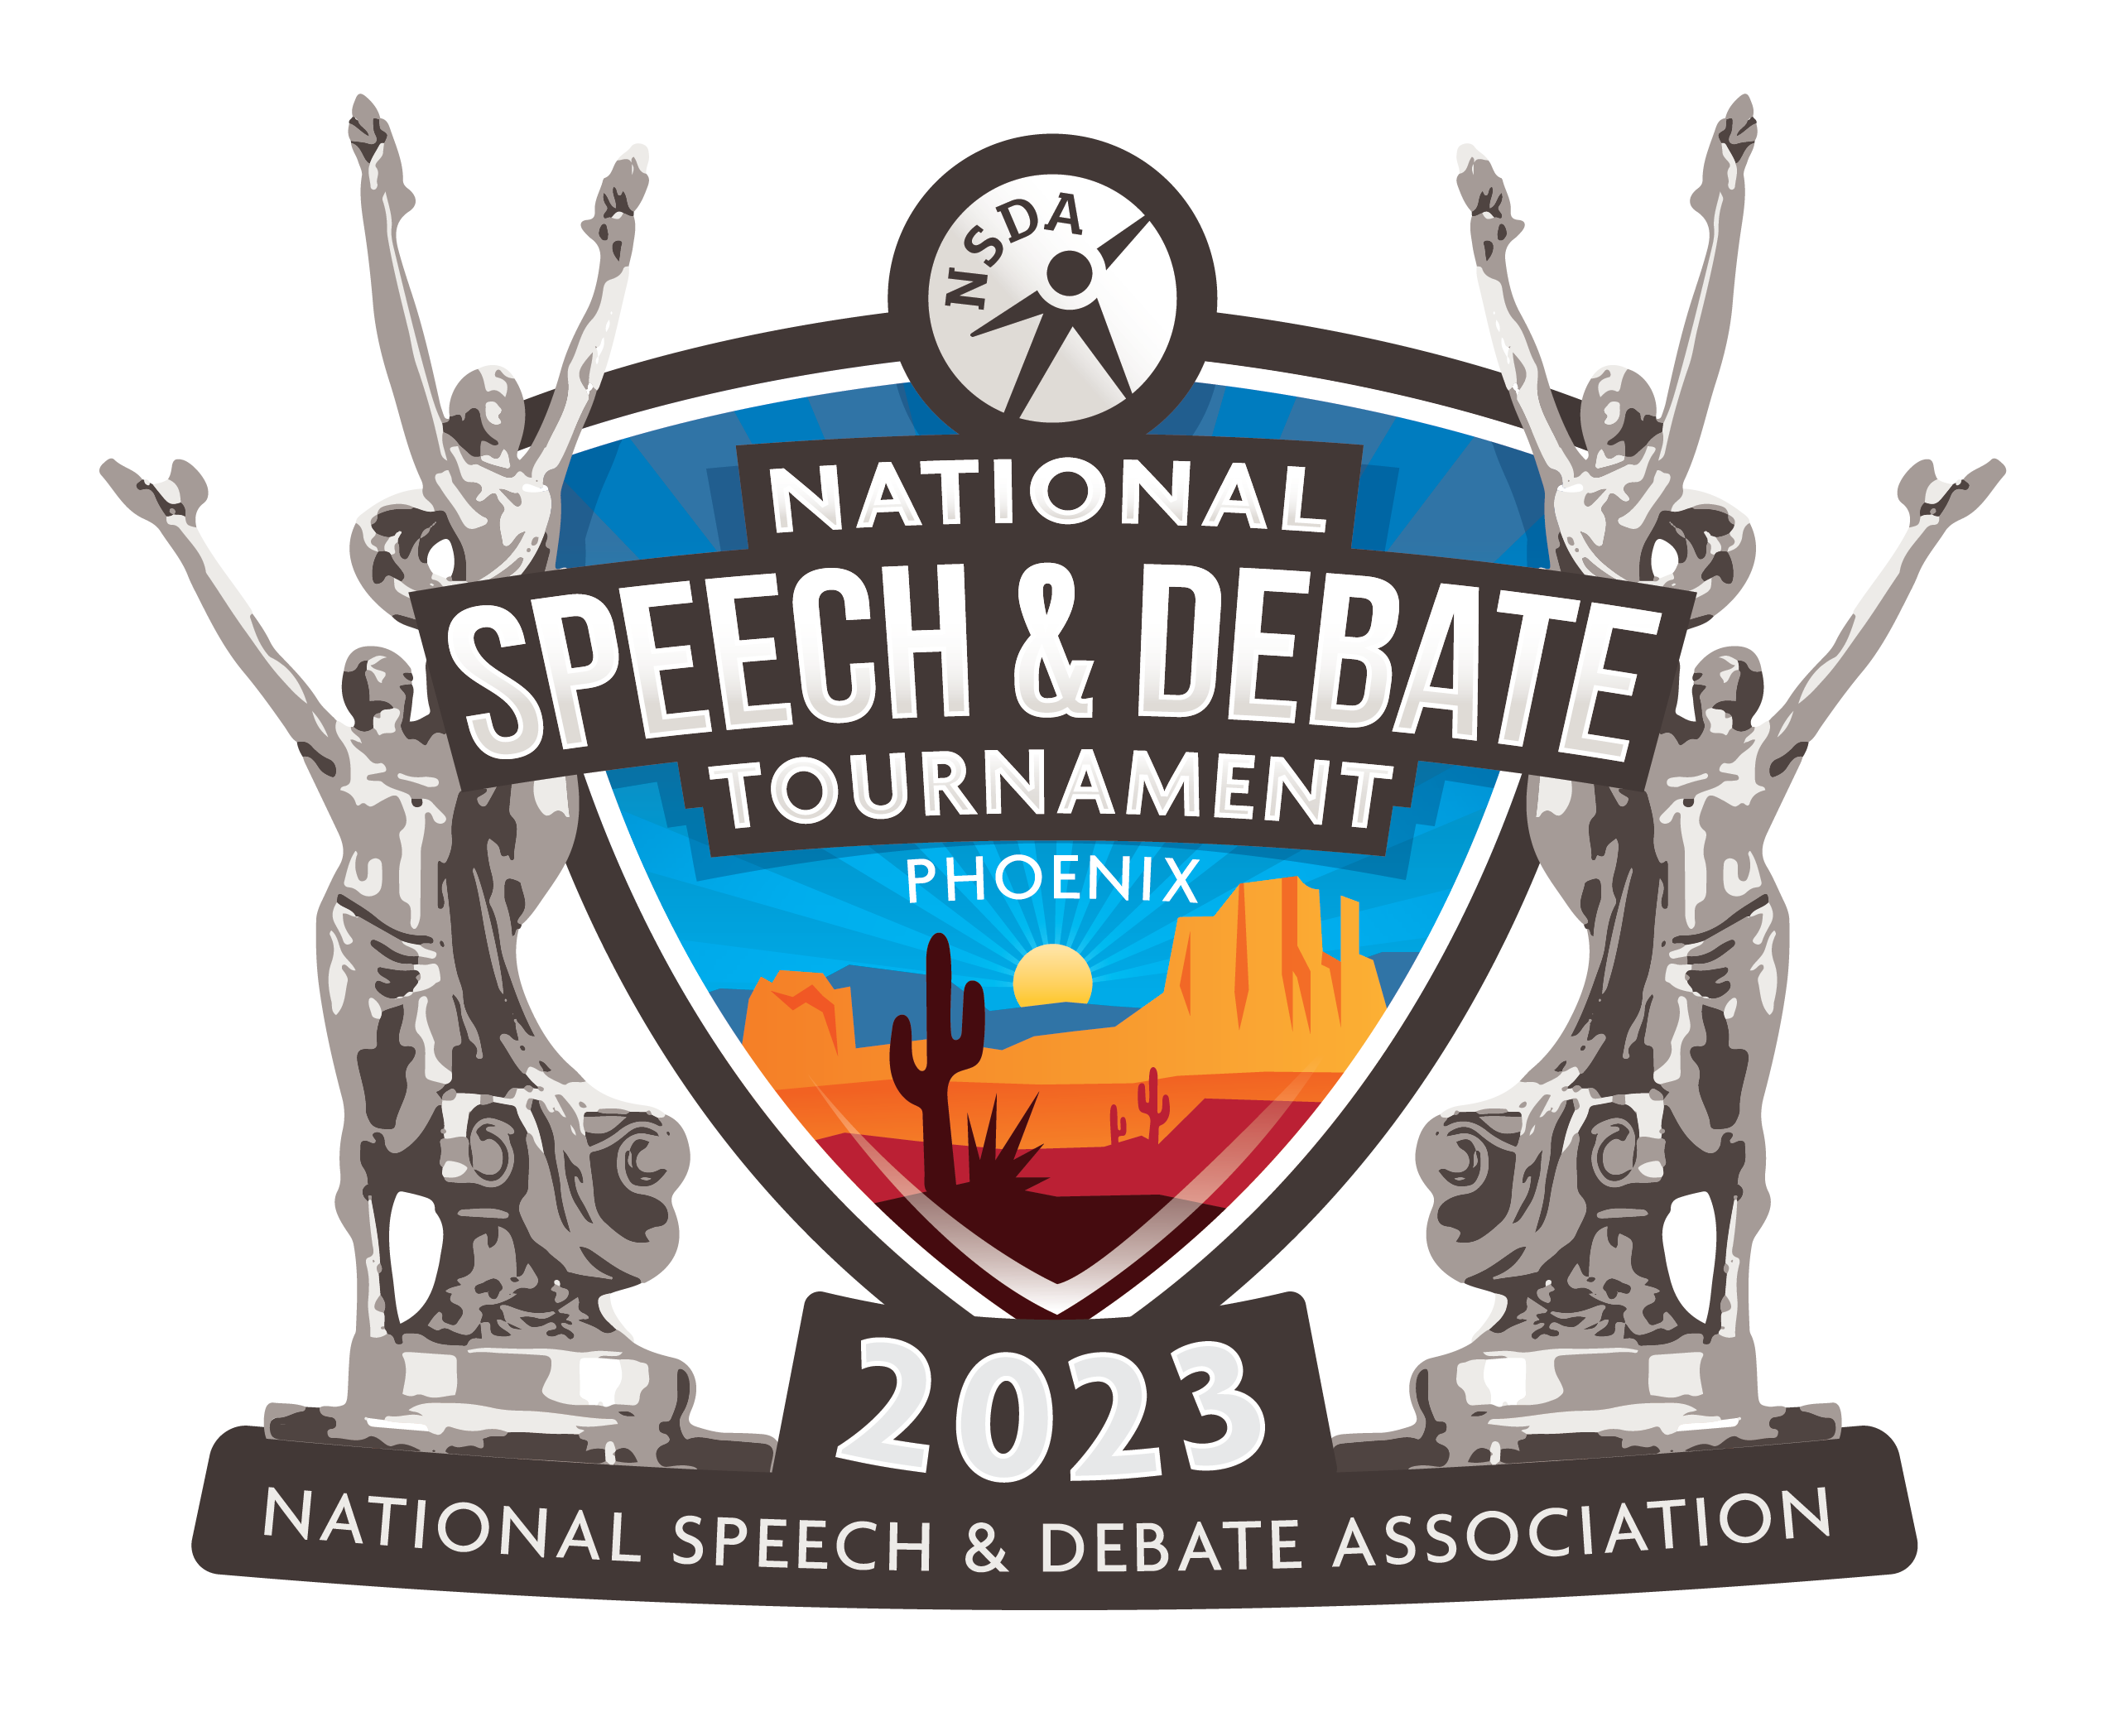 National Speech & Debate Tournament 2023 Phoenix